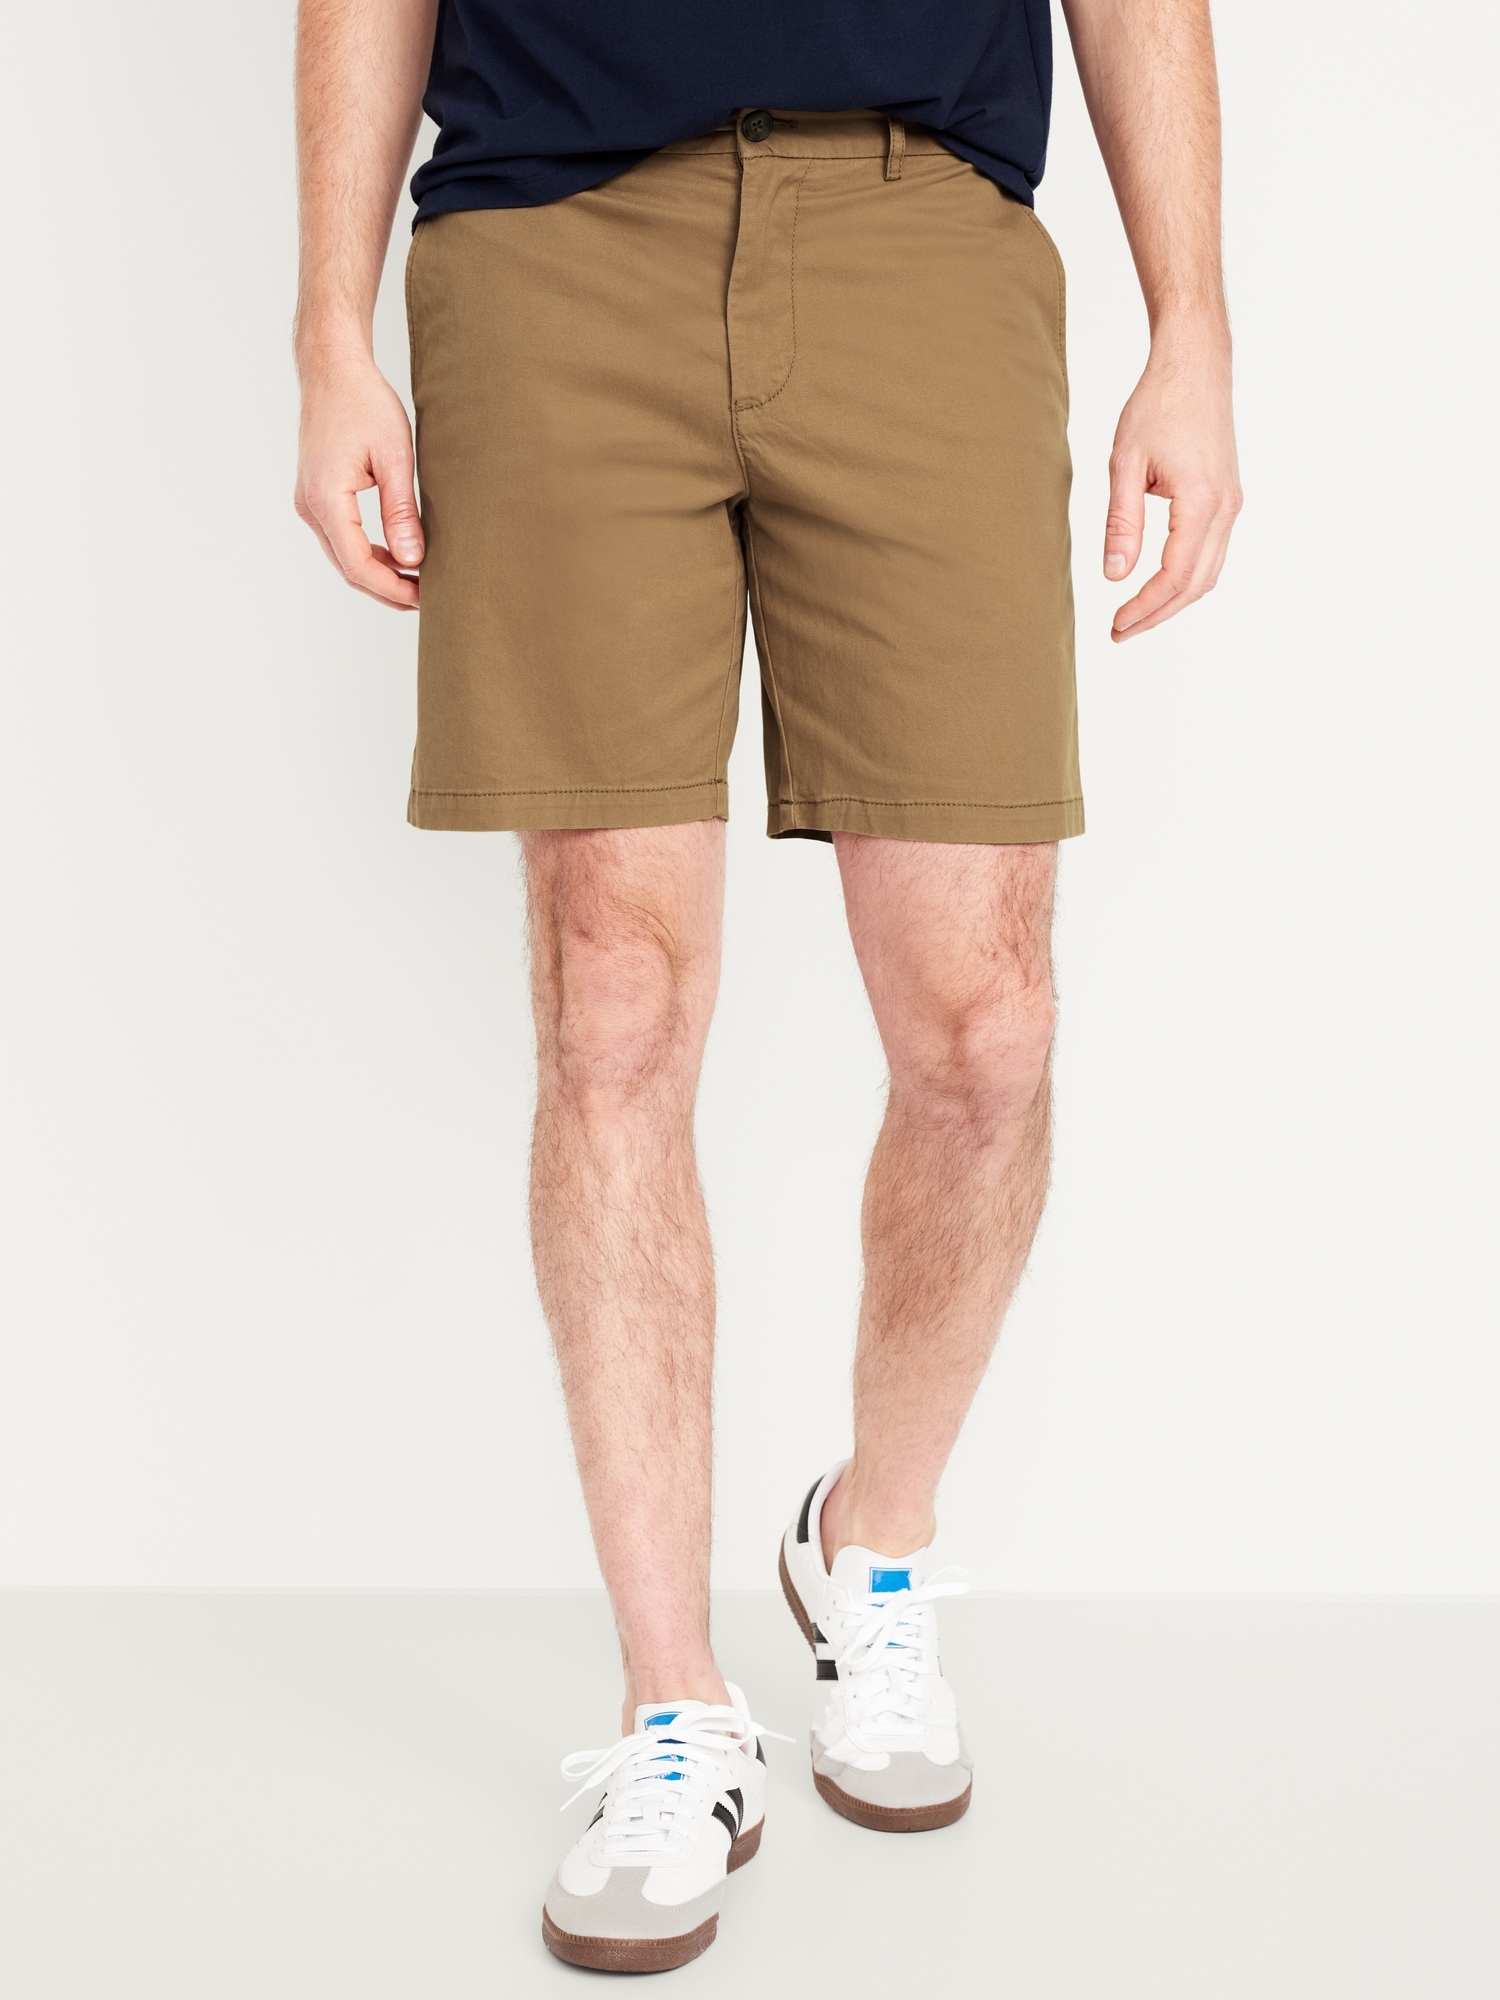 8 Inch Inseam Shorts